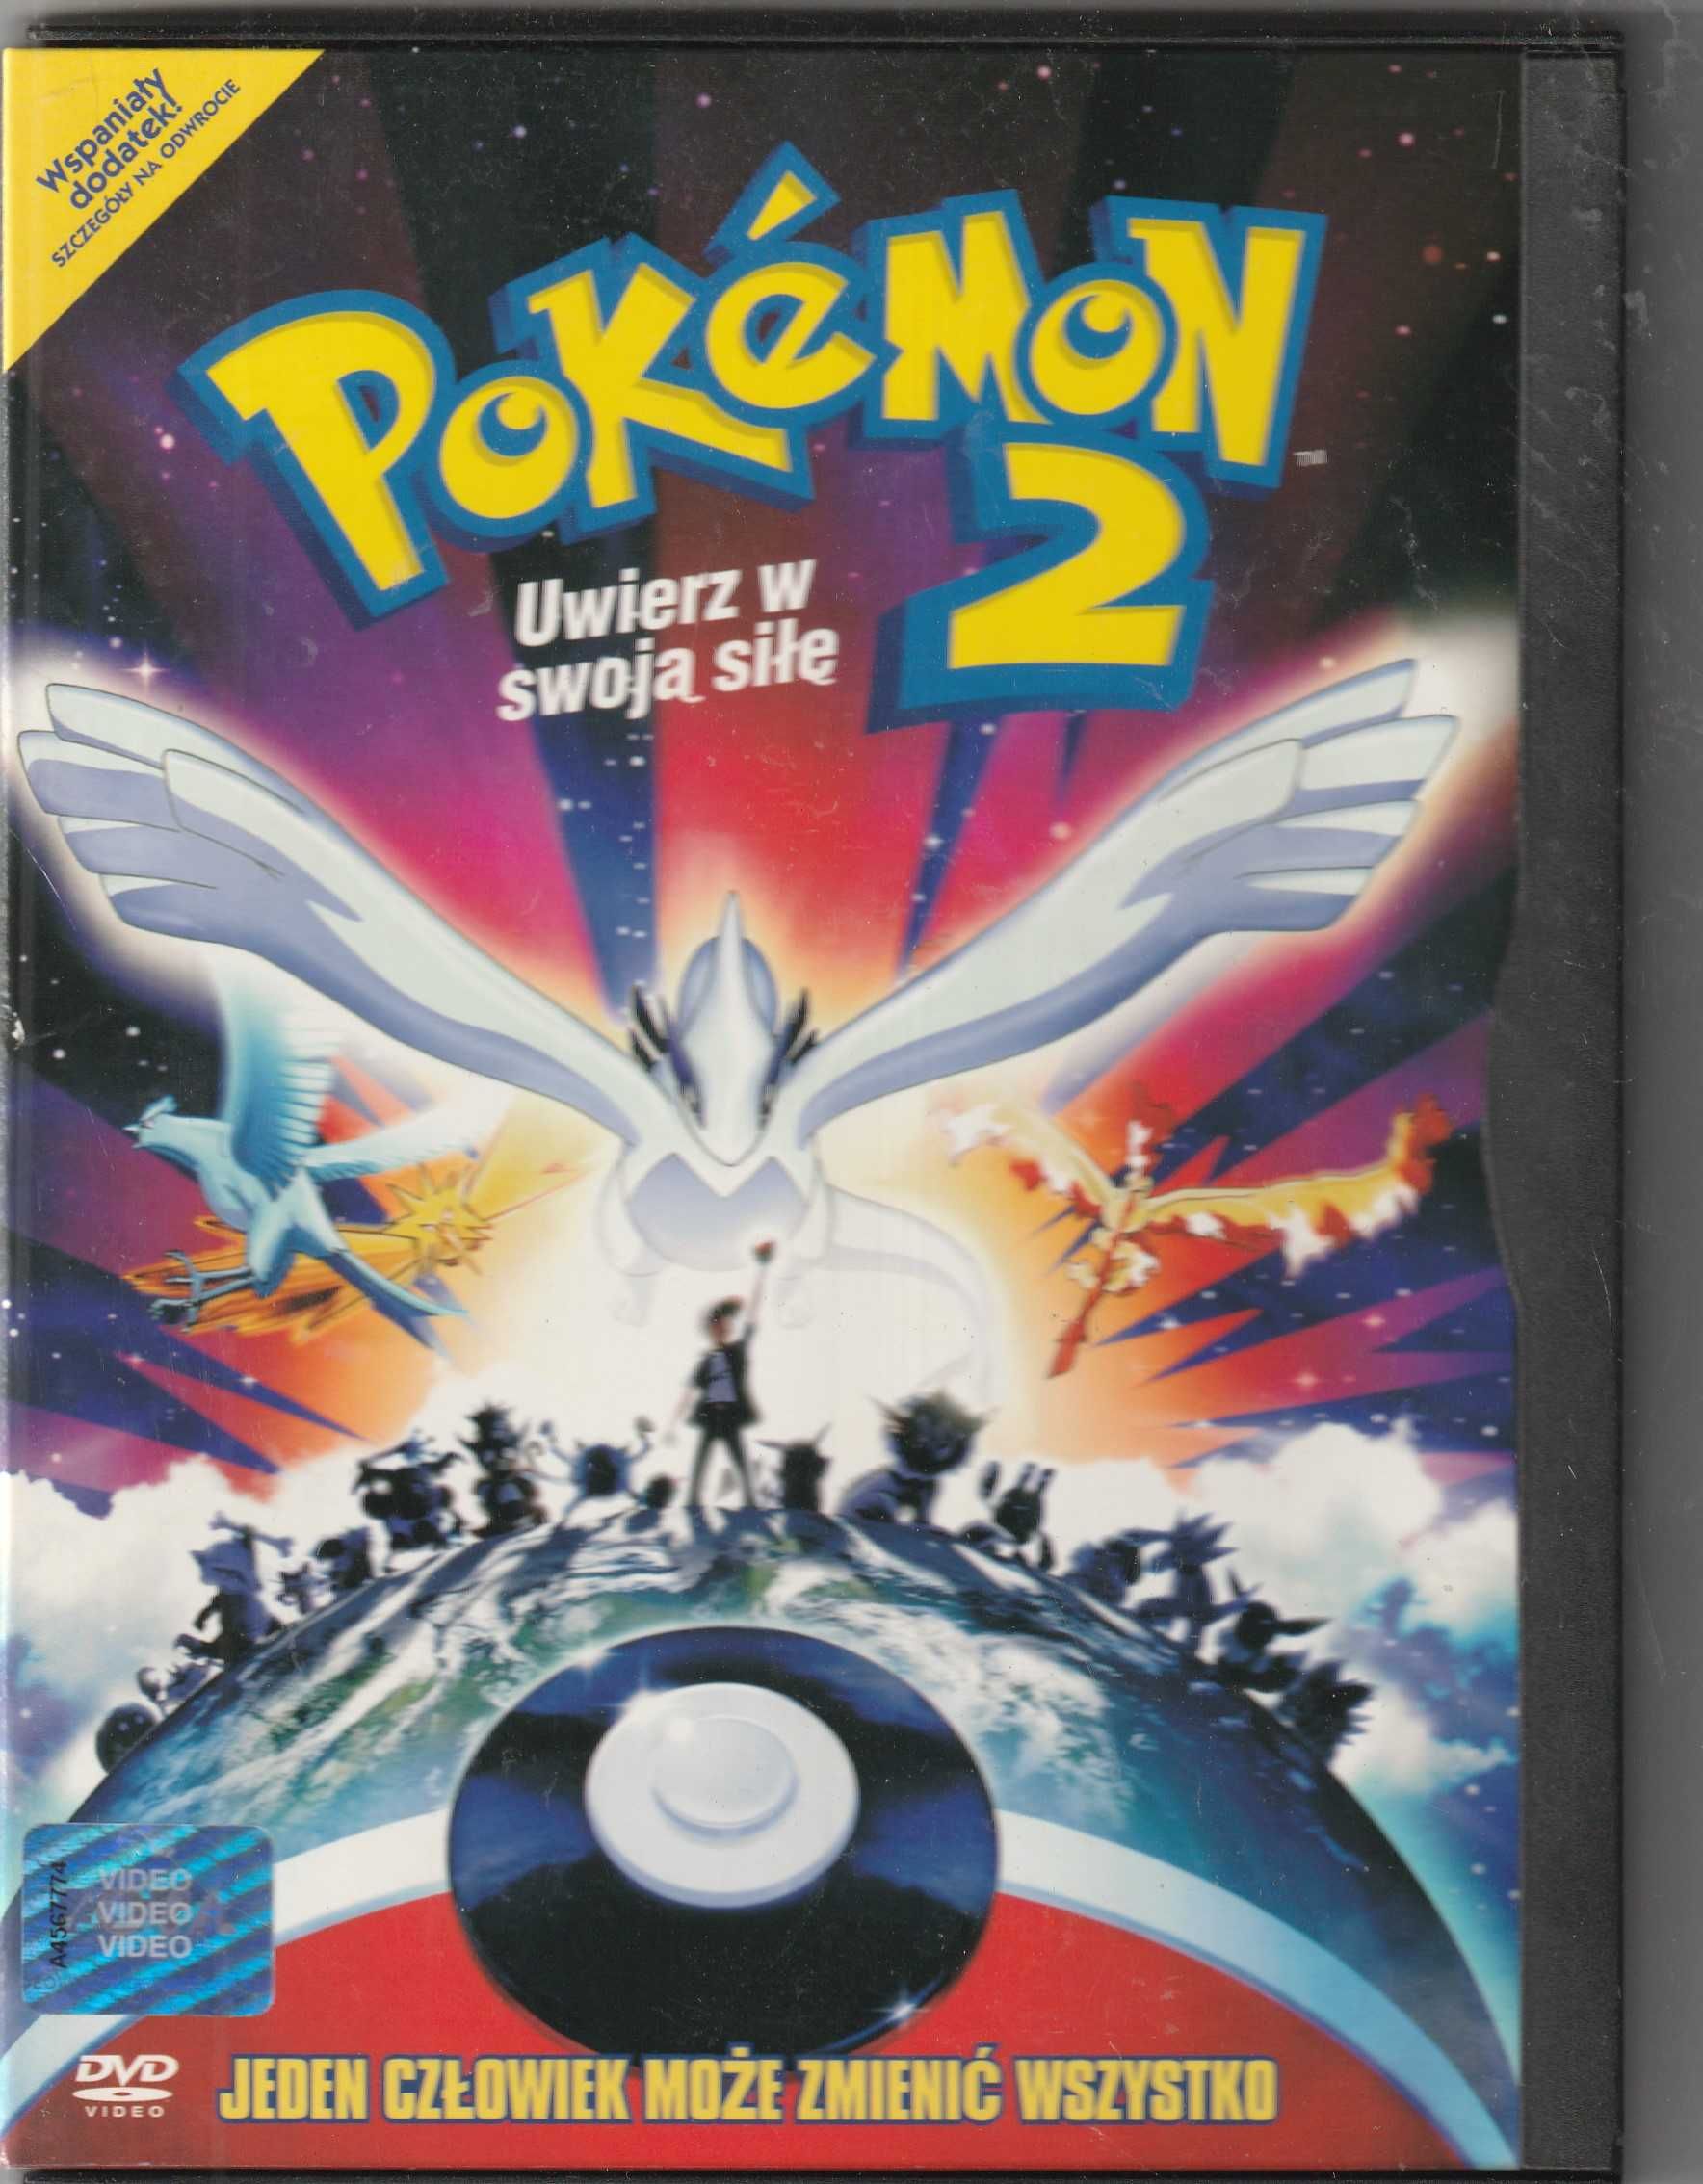 Pokemon 2  uwierz w swoją DVD